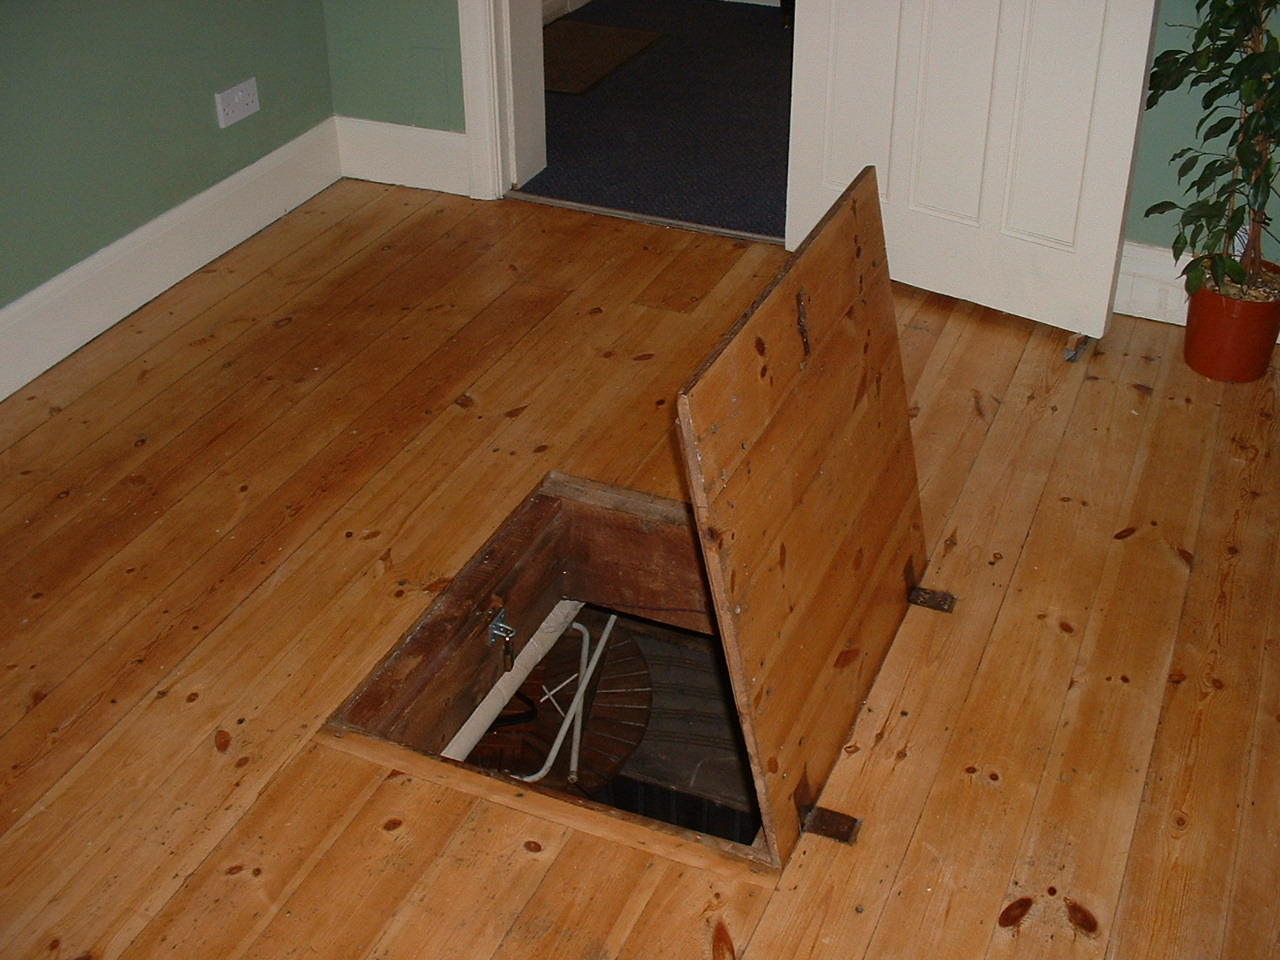 floor trap door Google Search Hidden Spaces, Hidden Rooms, Secret